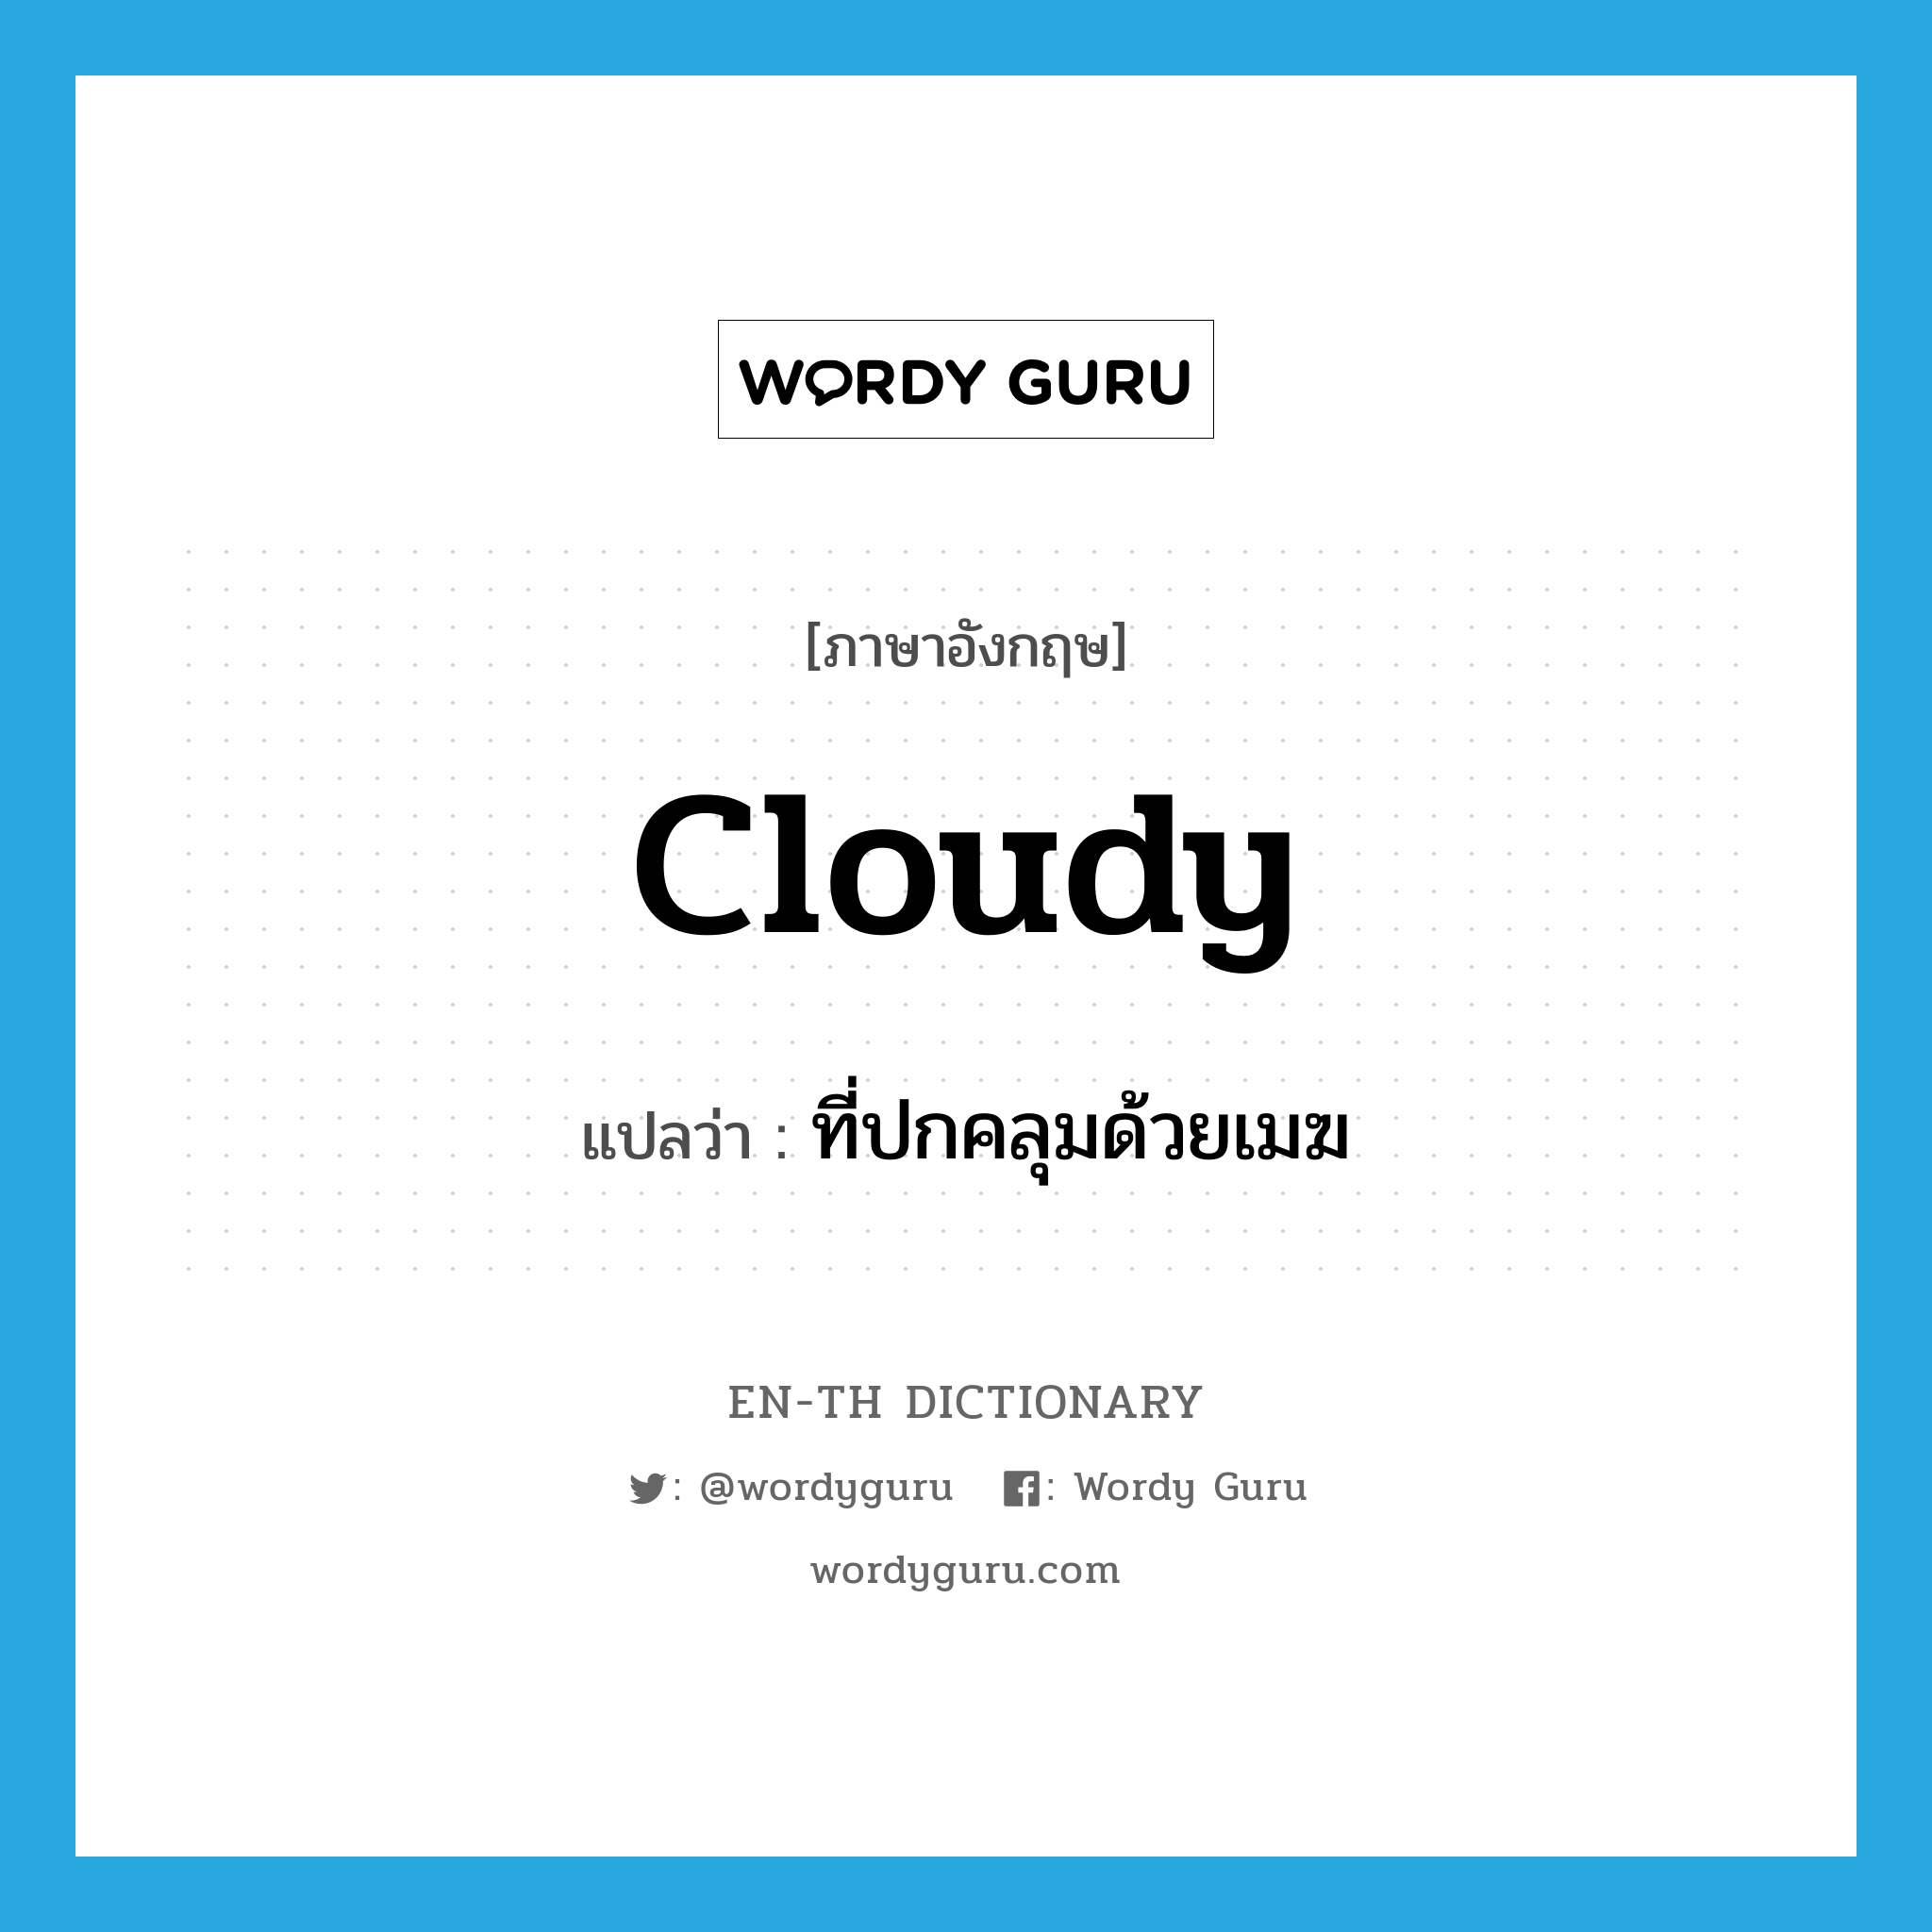 cloudy แปลว่า?, คำศัพท์ภาษาอังกฤษ cloudy แปลว่า ที่ปกคลุมด้วยเมฆ ประเภท ADJ หมวด ADJ